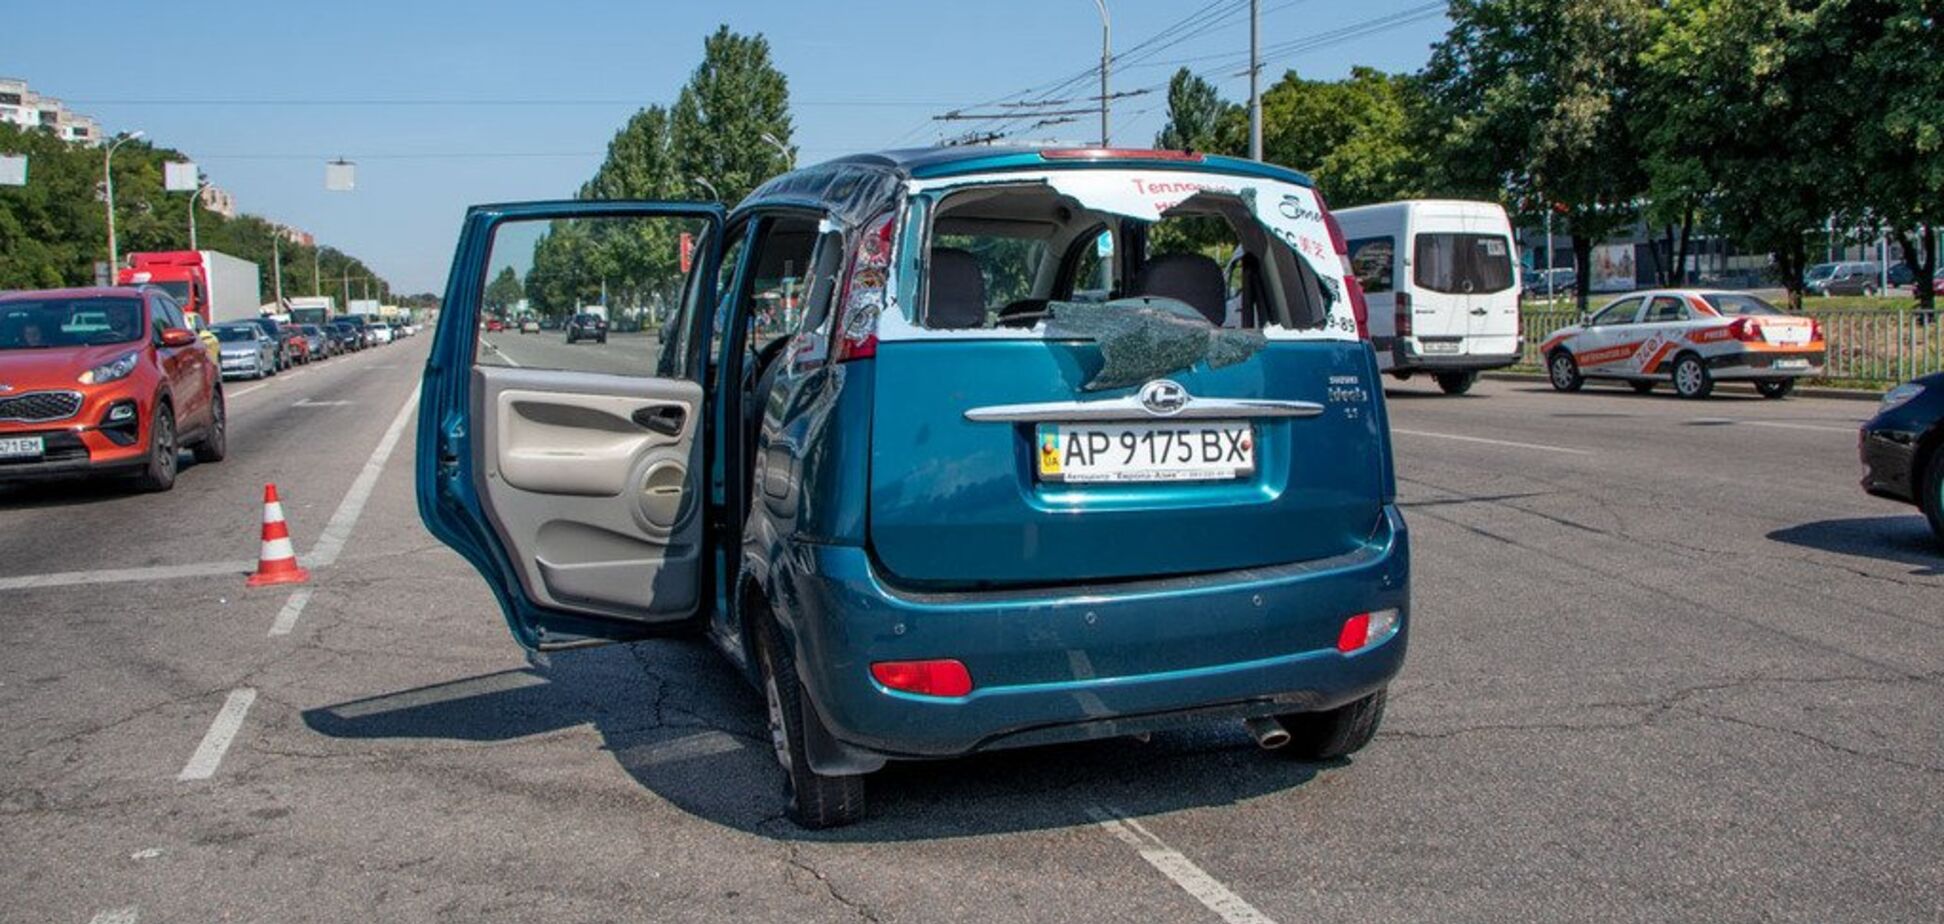 Авто перевернулося в повітрі: через ДТП у Дніпрі постраждали діти. Фото